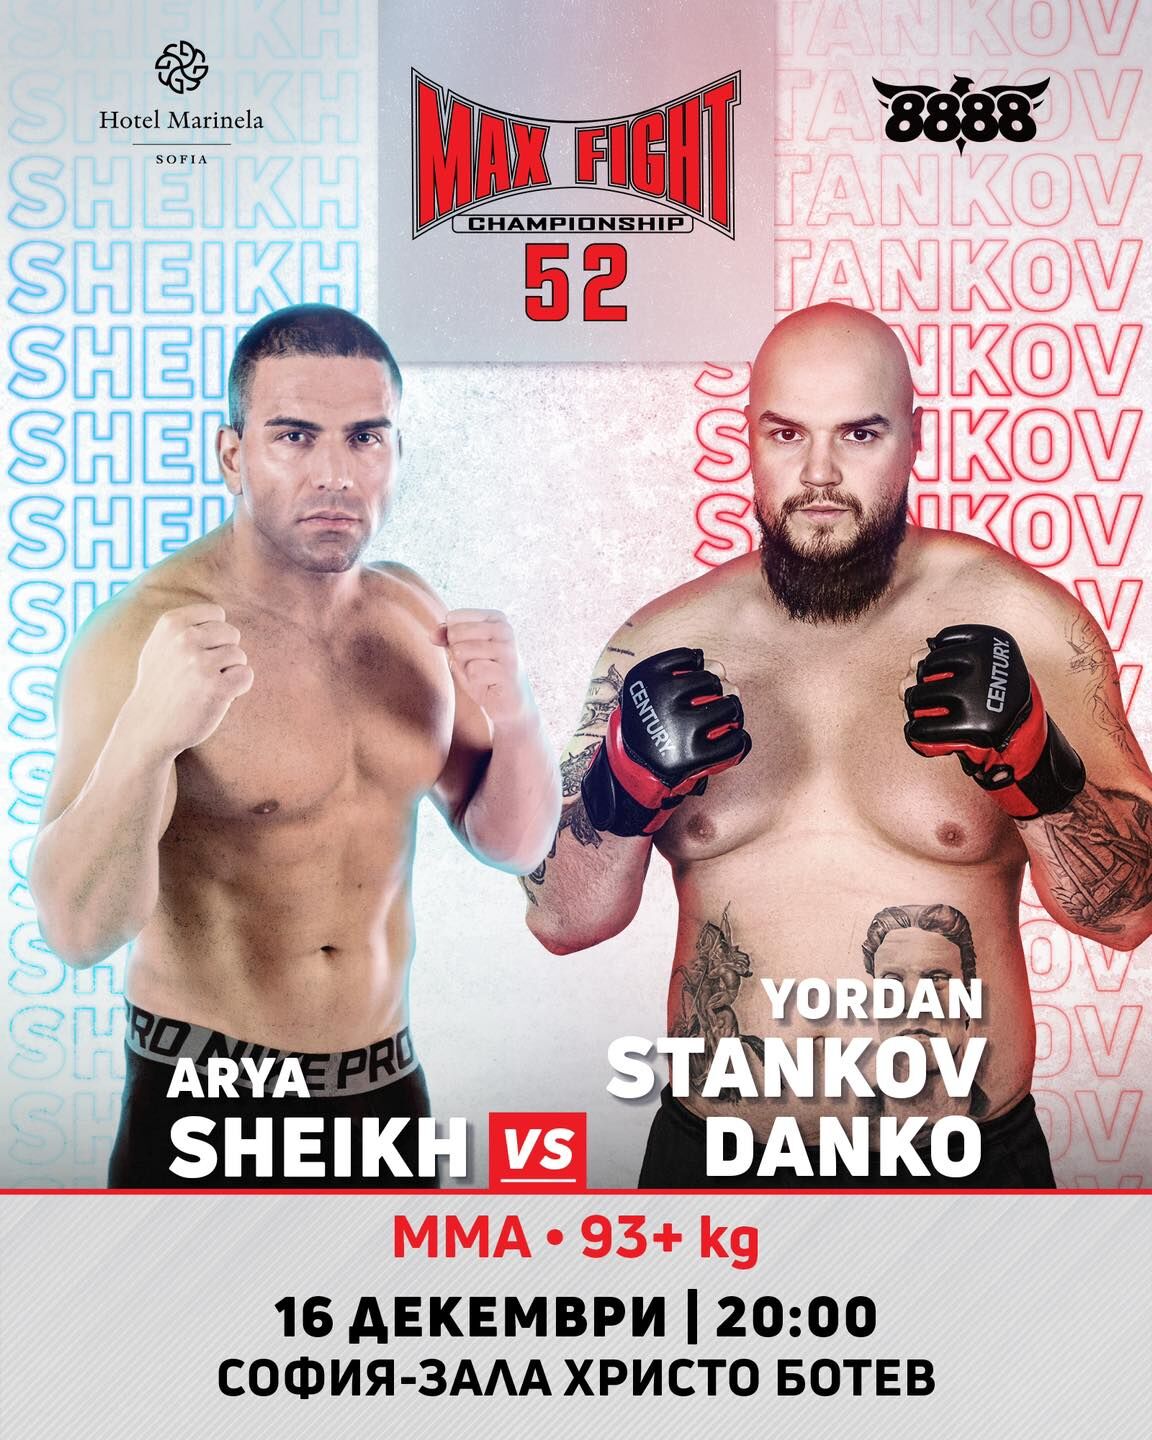 Дебютантът Йордан Станков - ДАНКО се изправя срещу опитния боец и треньор Аря Шейх на MAX FIGHT 52